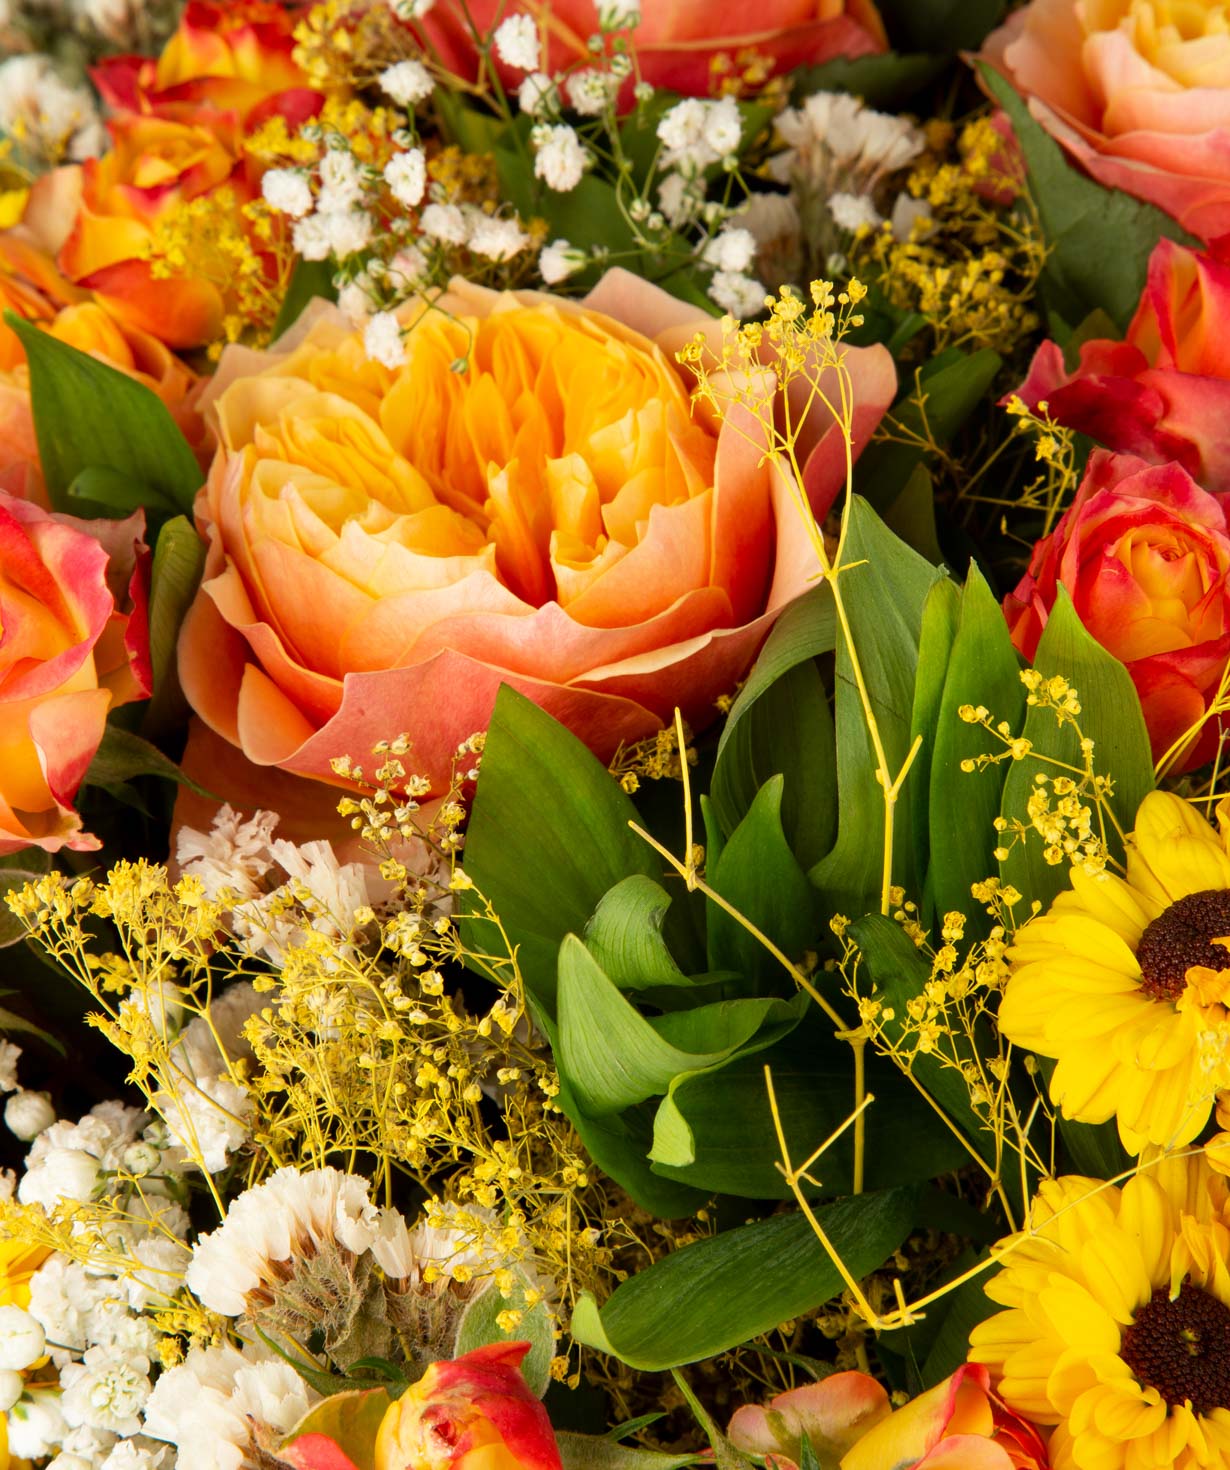 Ծաղկեփունջ «Քեյփ Թաուն» վարդերով, քրիզանթեմներով և գիպսոֆիլիաներով